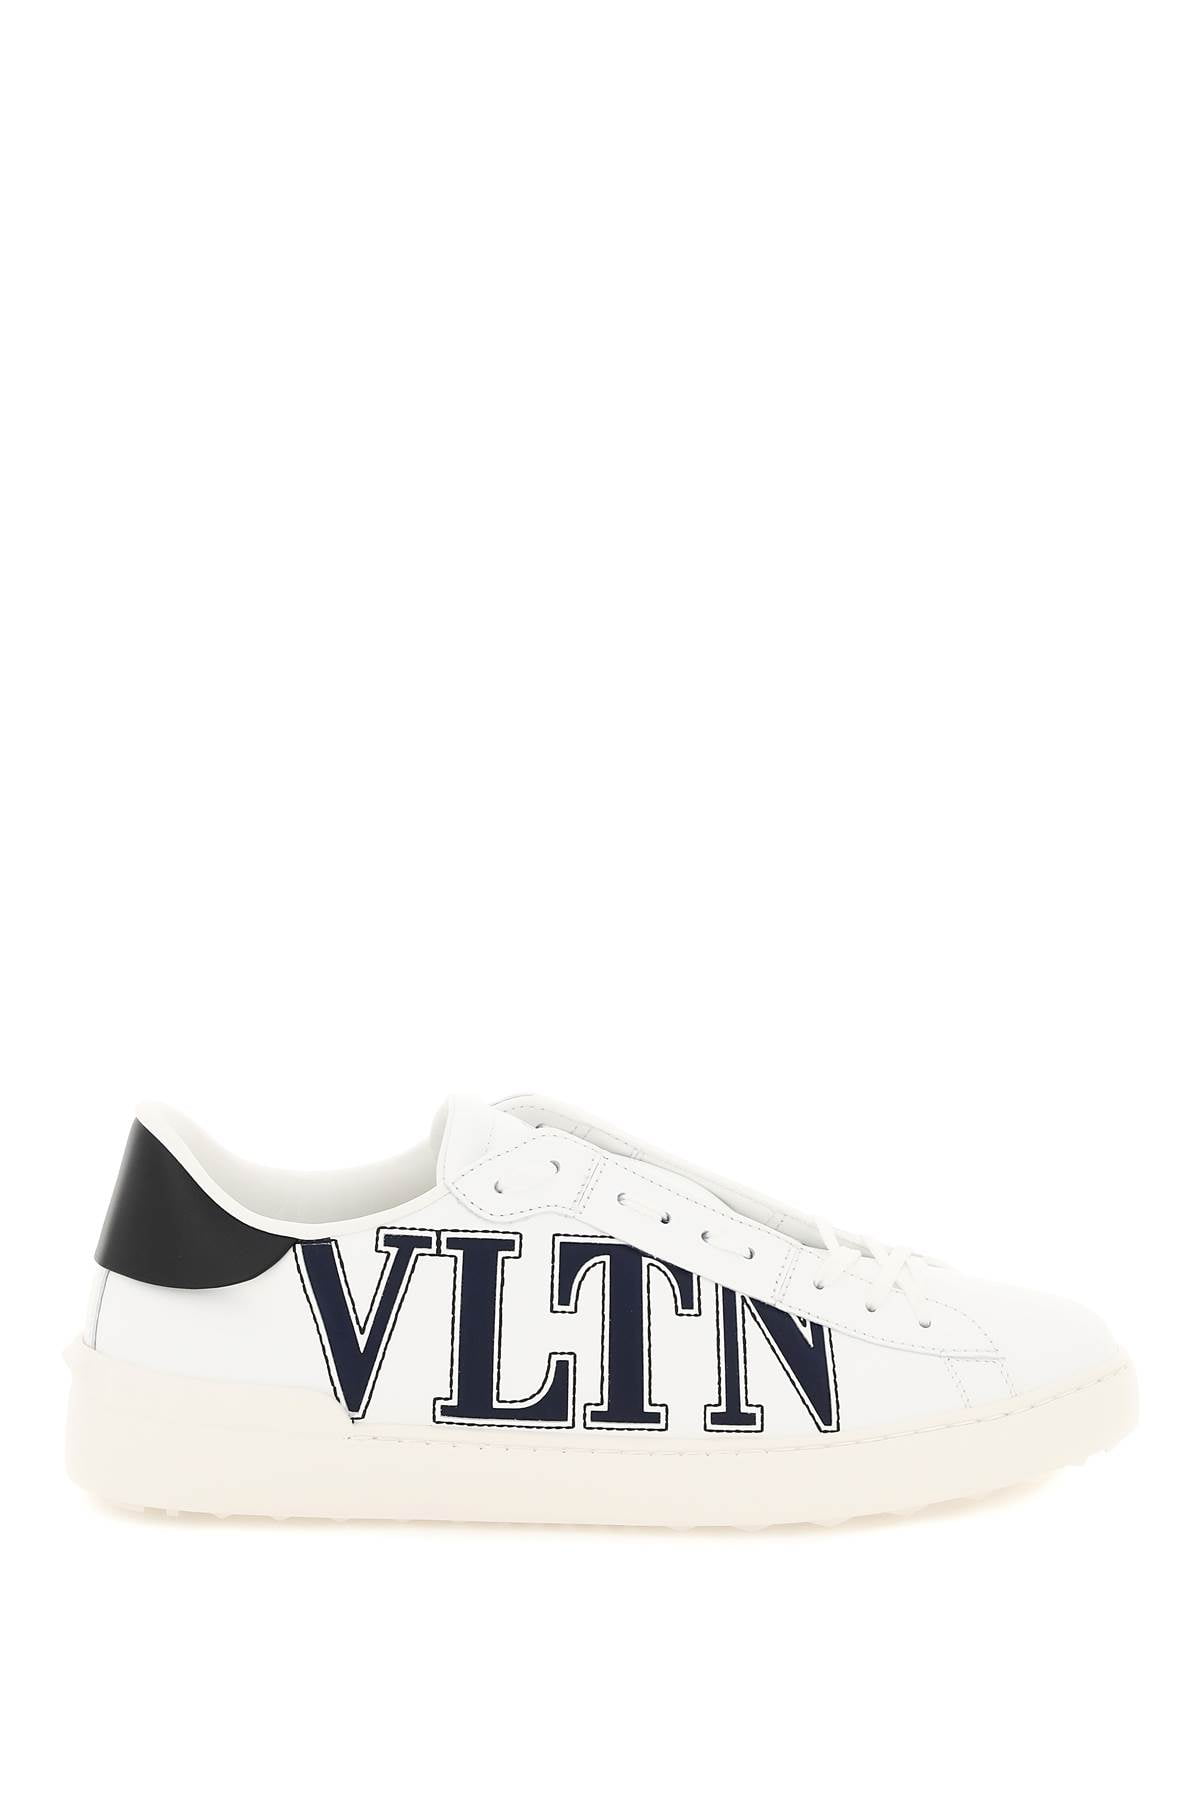 Valentino Garavani Open Sneakers With Vltn Logo Men - Walmart.com